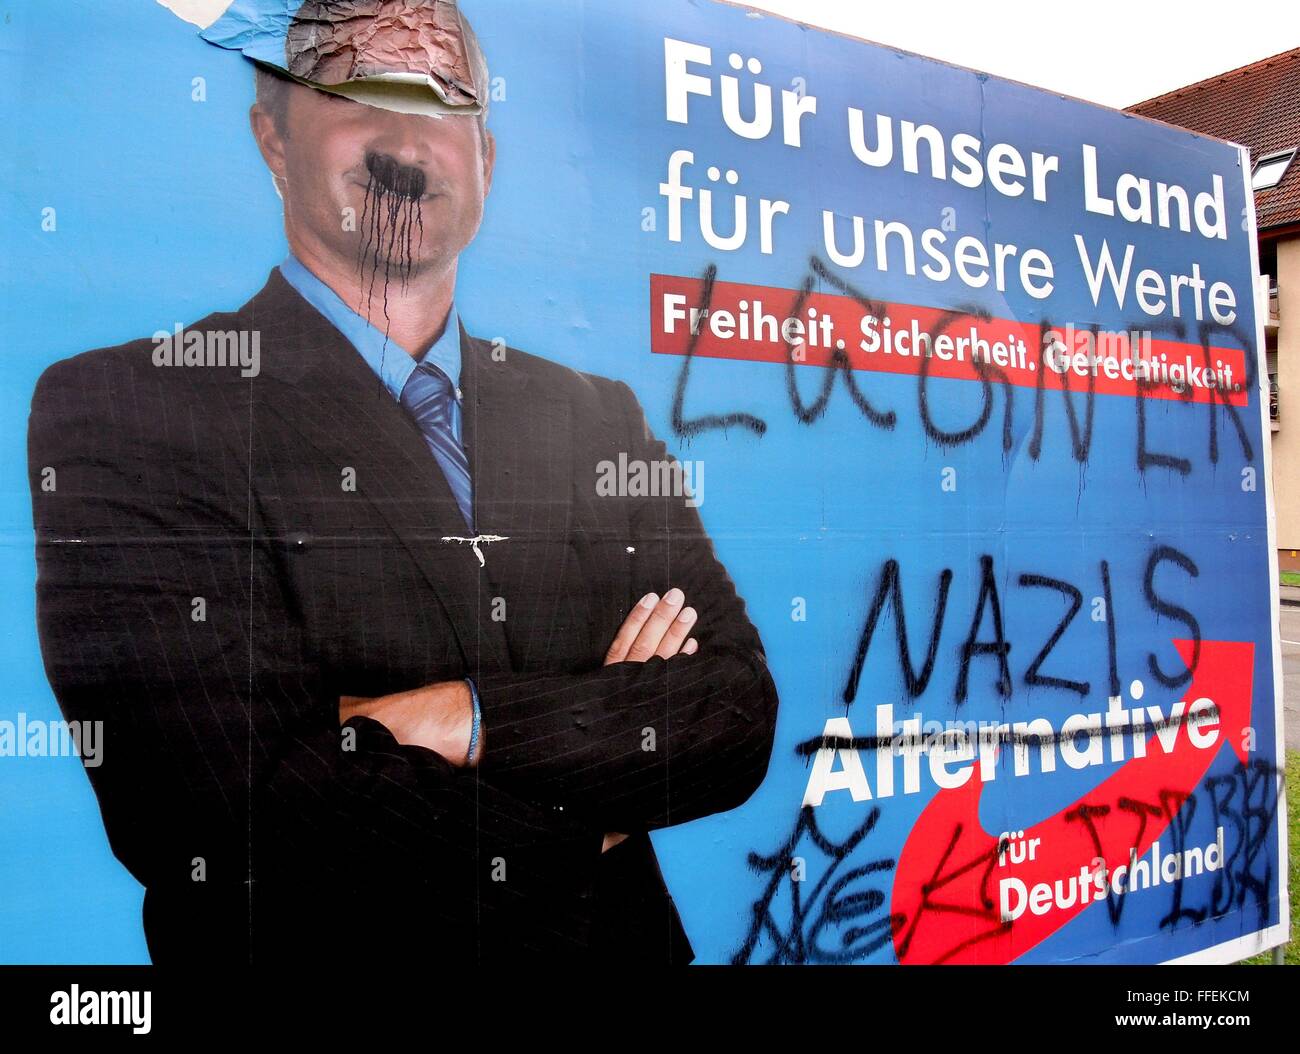 Con le parole "Lügner' (bugiardo) e nazista oversprayed cartellone elettorale del diritto tedesco - ala parte AfD in Waldkirch (Germania), su Februaray, 09, 2016. Foto Stock